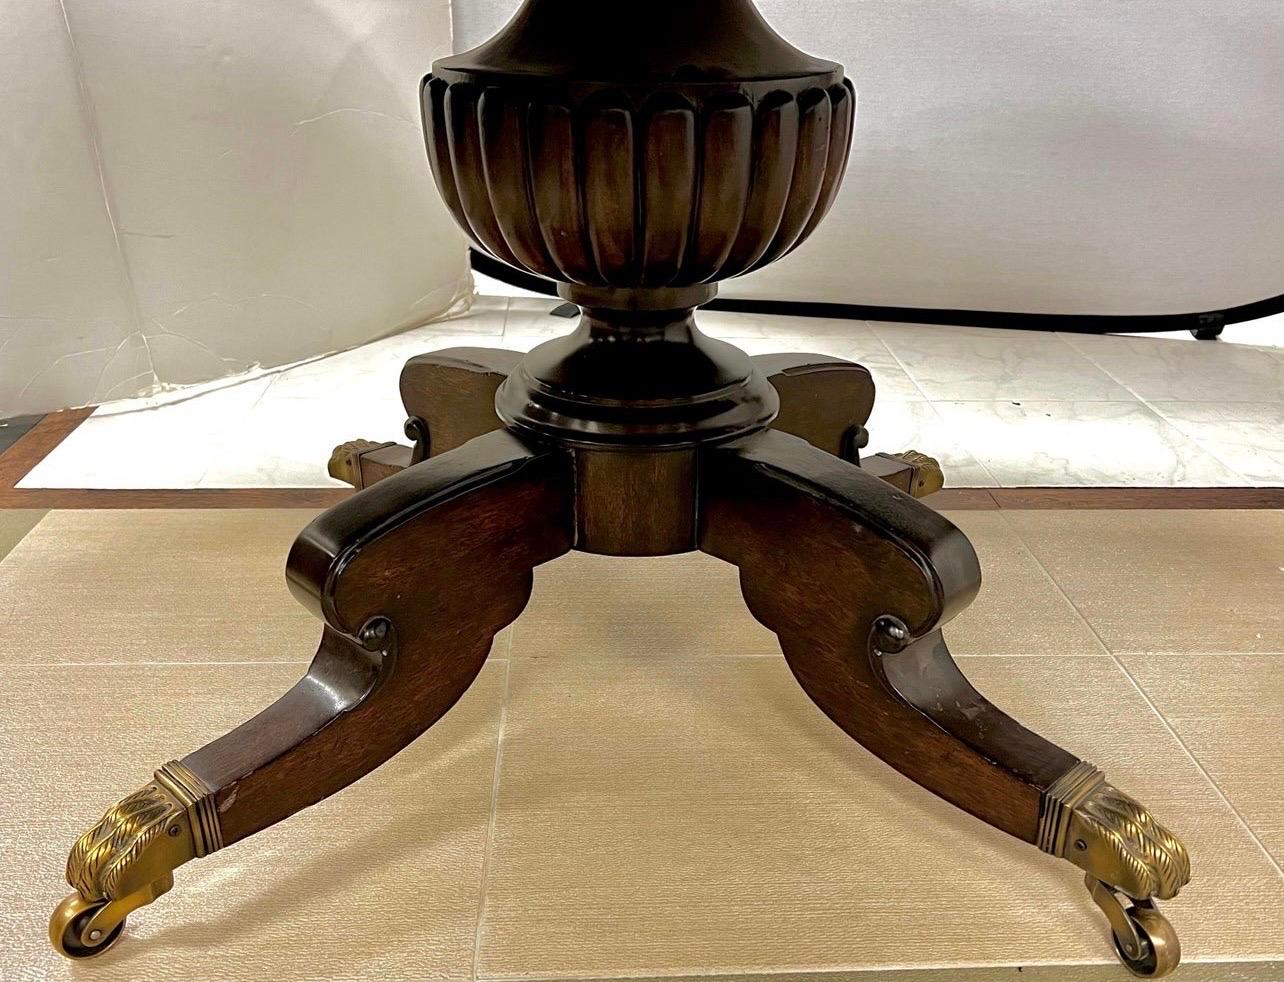 Magnifique table de salle à manger ronde en bois Ralph Lauren/Henredon avec six chaises assorties en cuir sellier avec dossier en canne.  Tous en très bon état.
La table est ronde de 60 pouces et il n'y a pas de feuilles ; elle peut donc accueillir